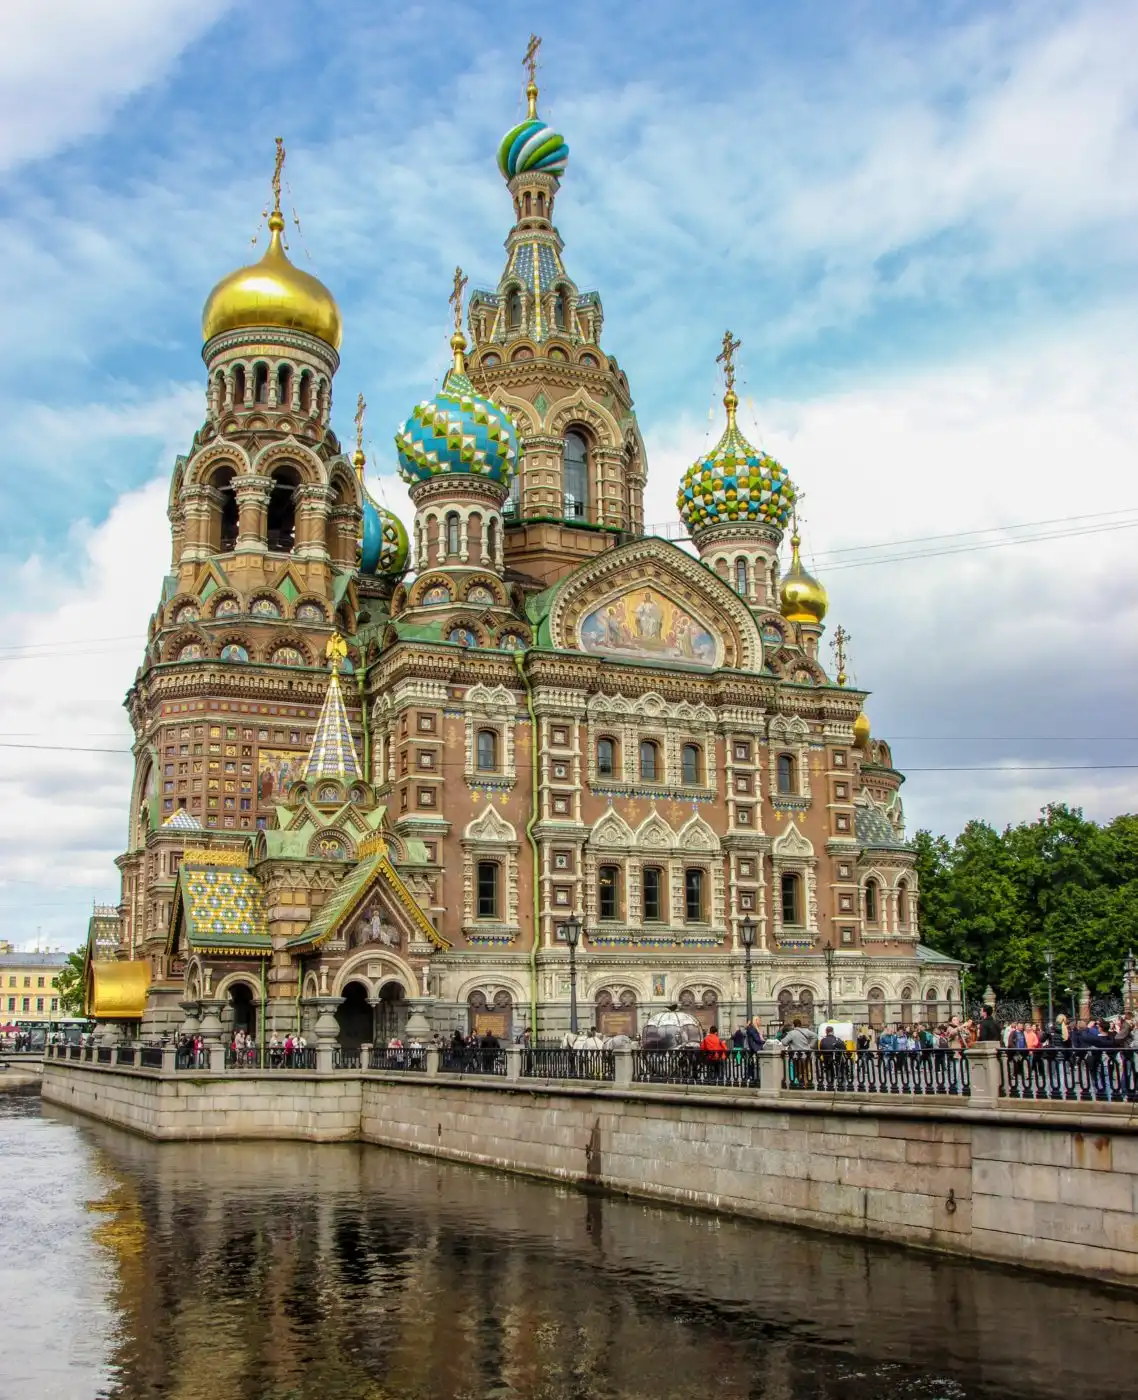 Saint Petersburg tourism